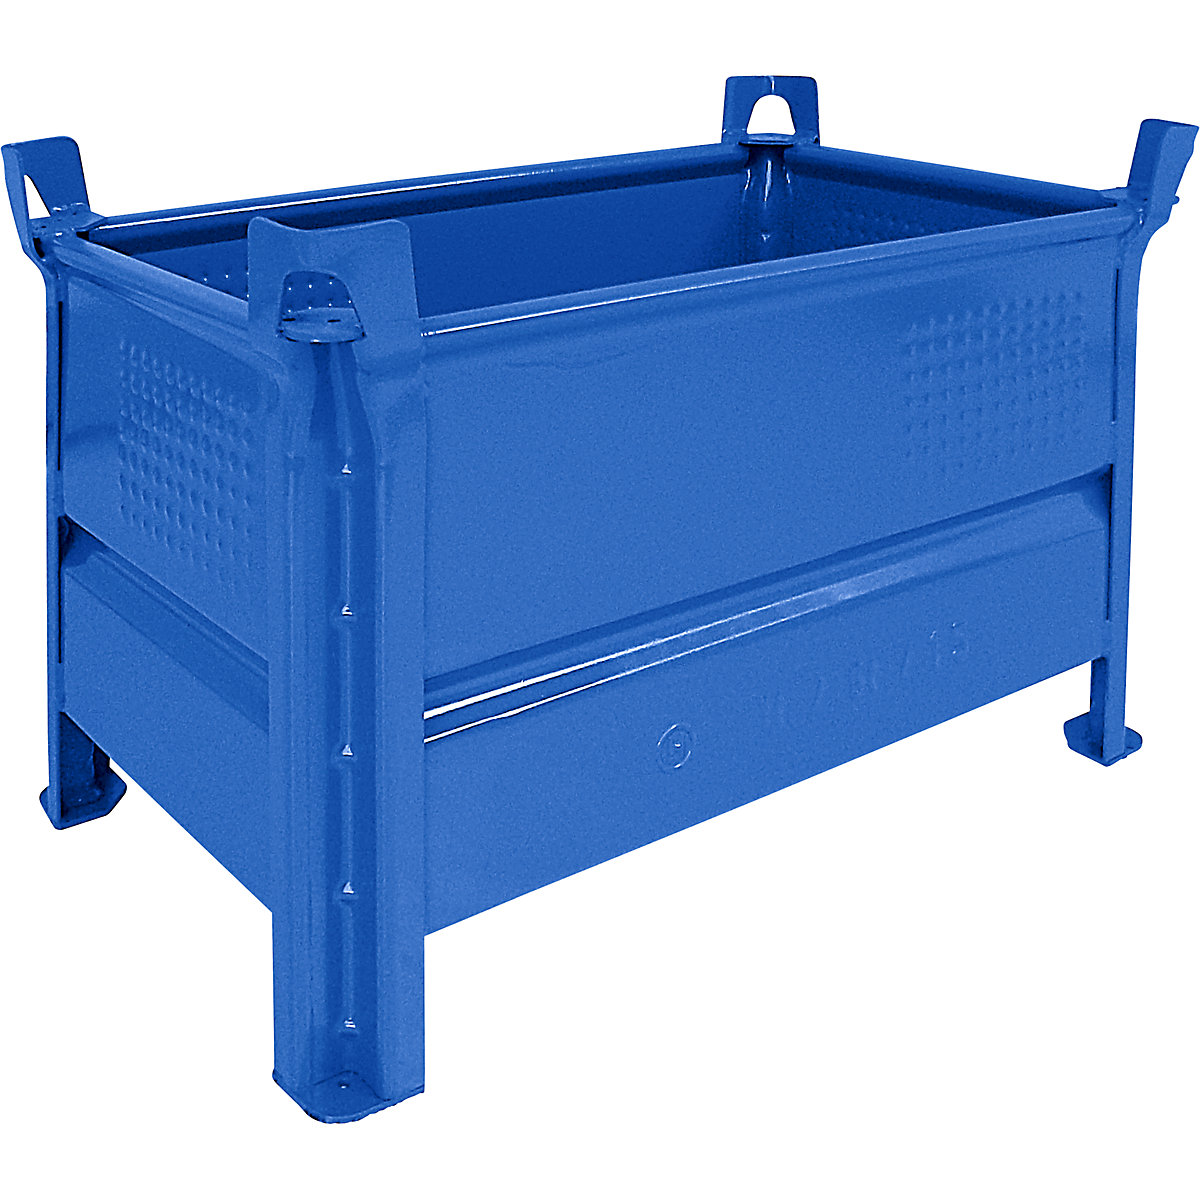 Pojemnik do ustawiania w stos z pełnymi ściankami – Heson, szer. x dł. 500 x 800 mm, nośność 1000 kg, niebieski, od 5 szt.-7